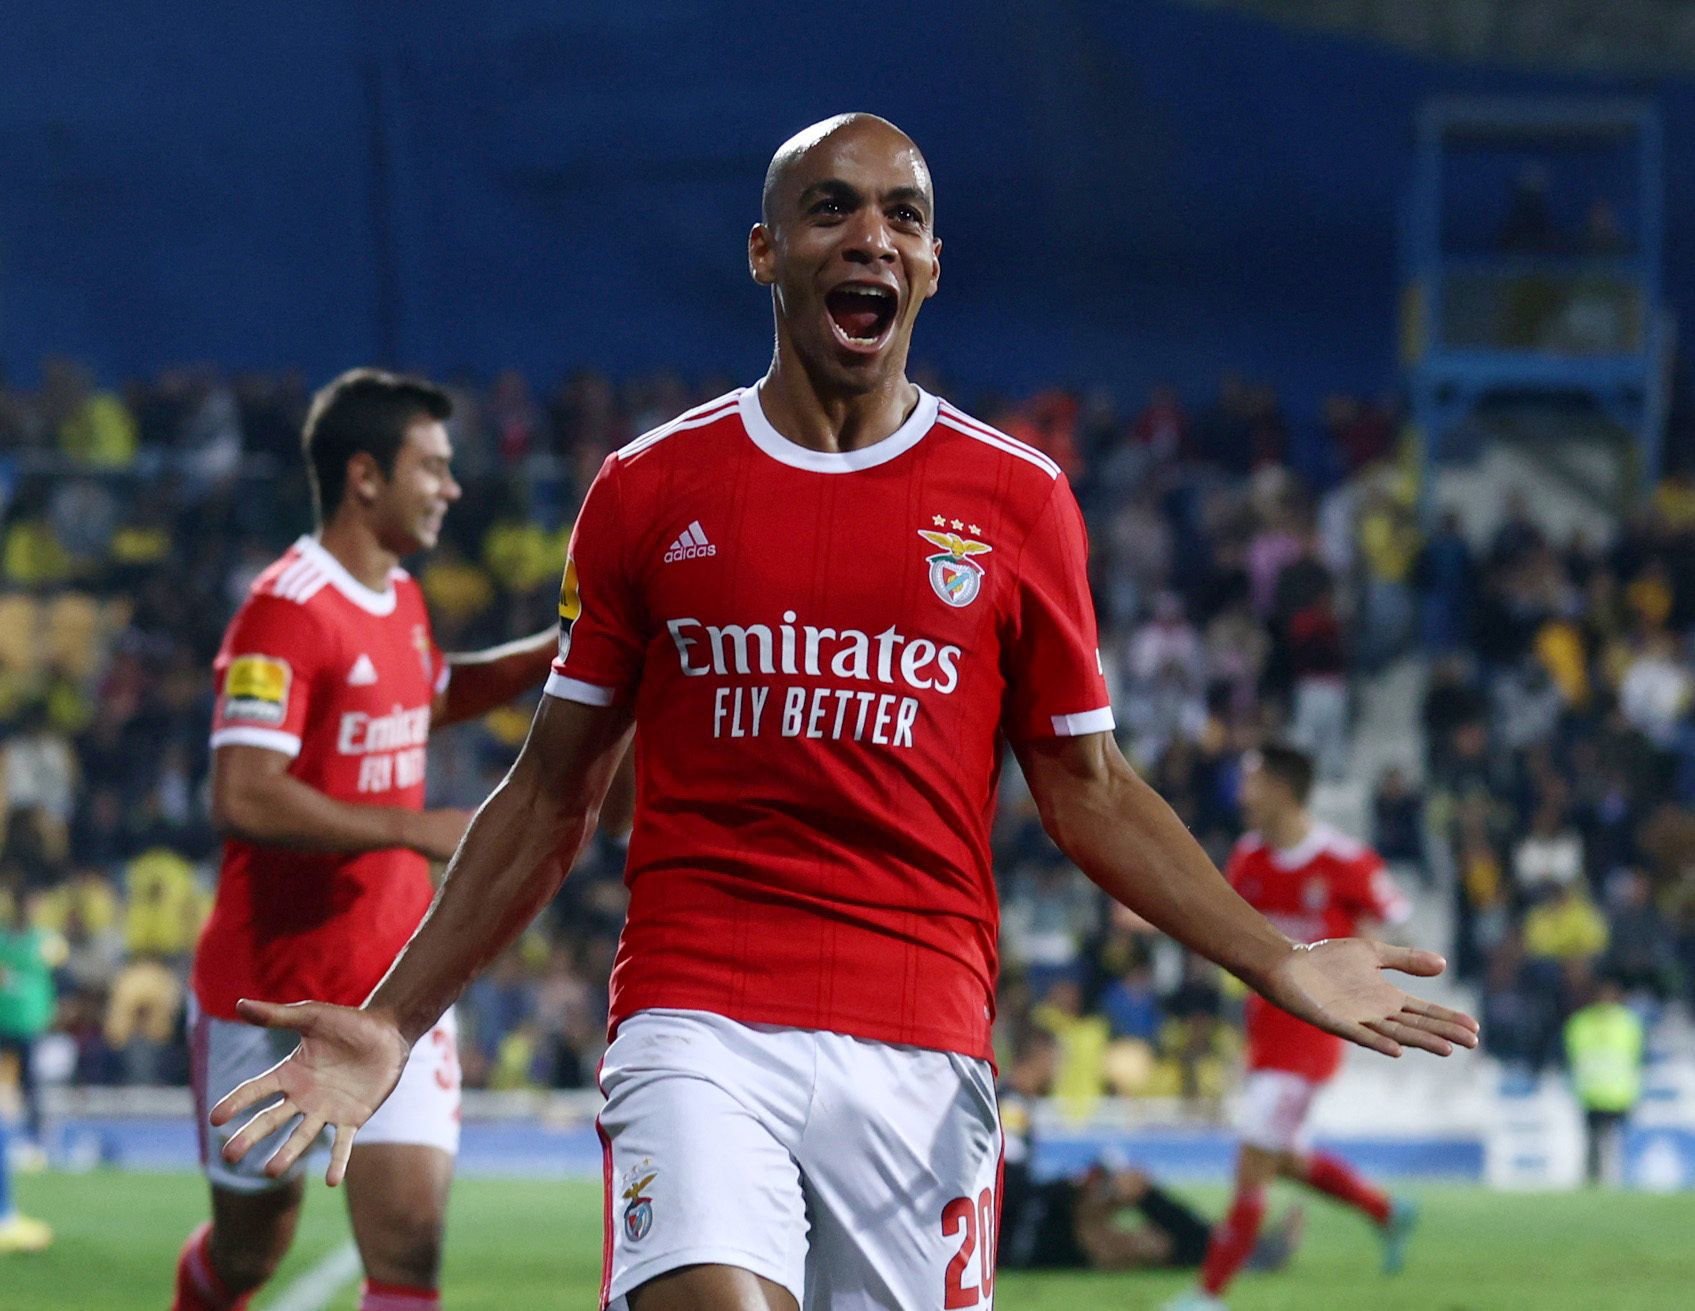 Joao Mario celebrates after scoring a goal for Benfica